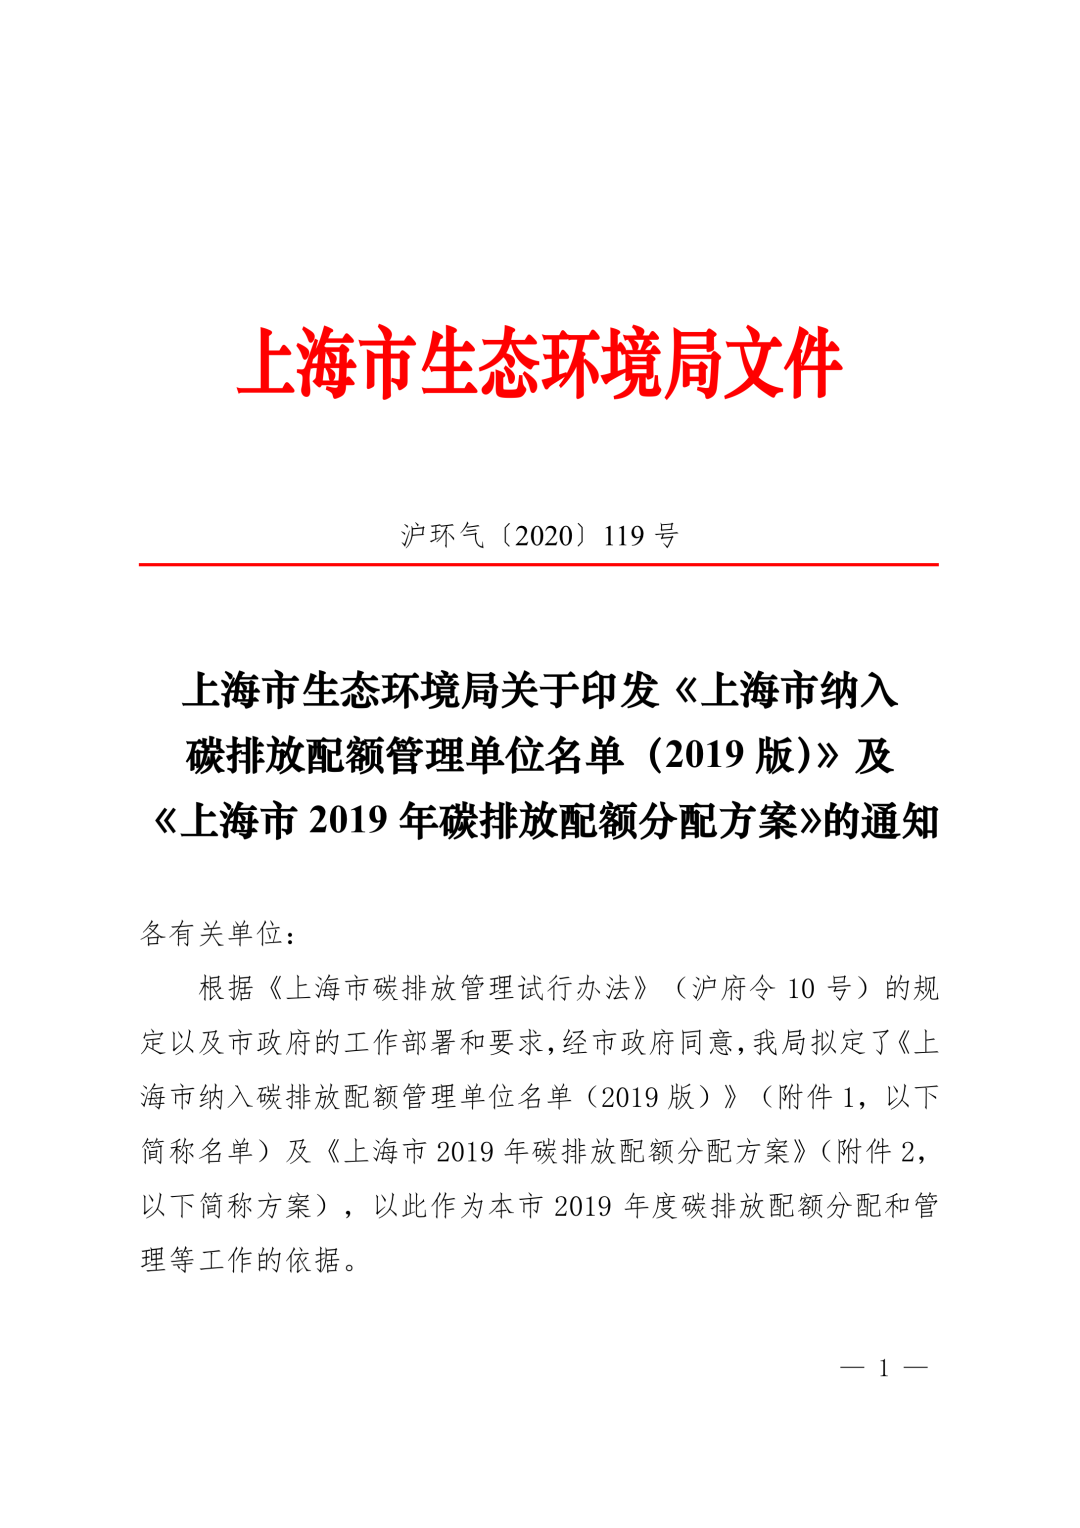 【关注】上海市生态环境局关于印发《上海市纳入碳排放配额管理单位名单（2019版）》及《上海市2019年碳排放配额分配方案》的通知(图1)